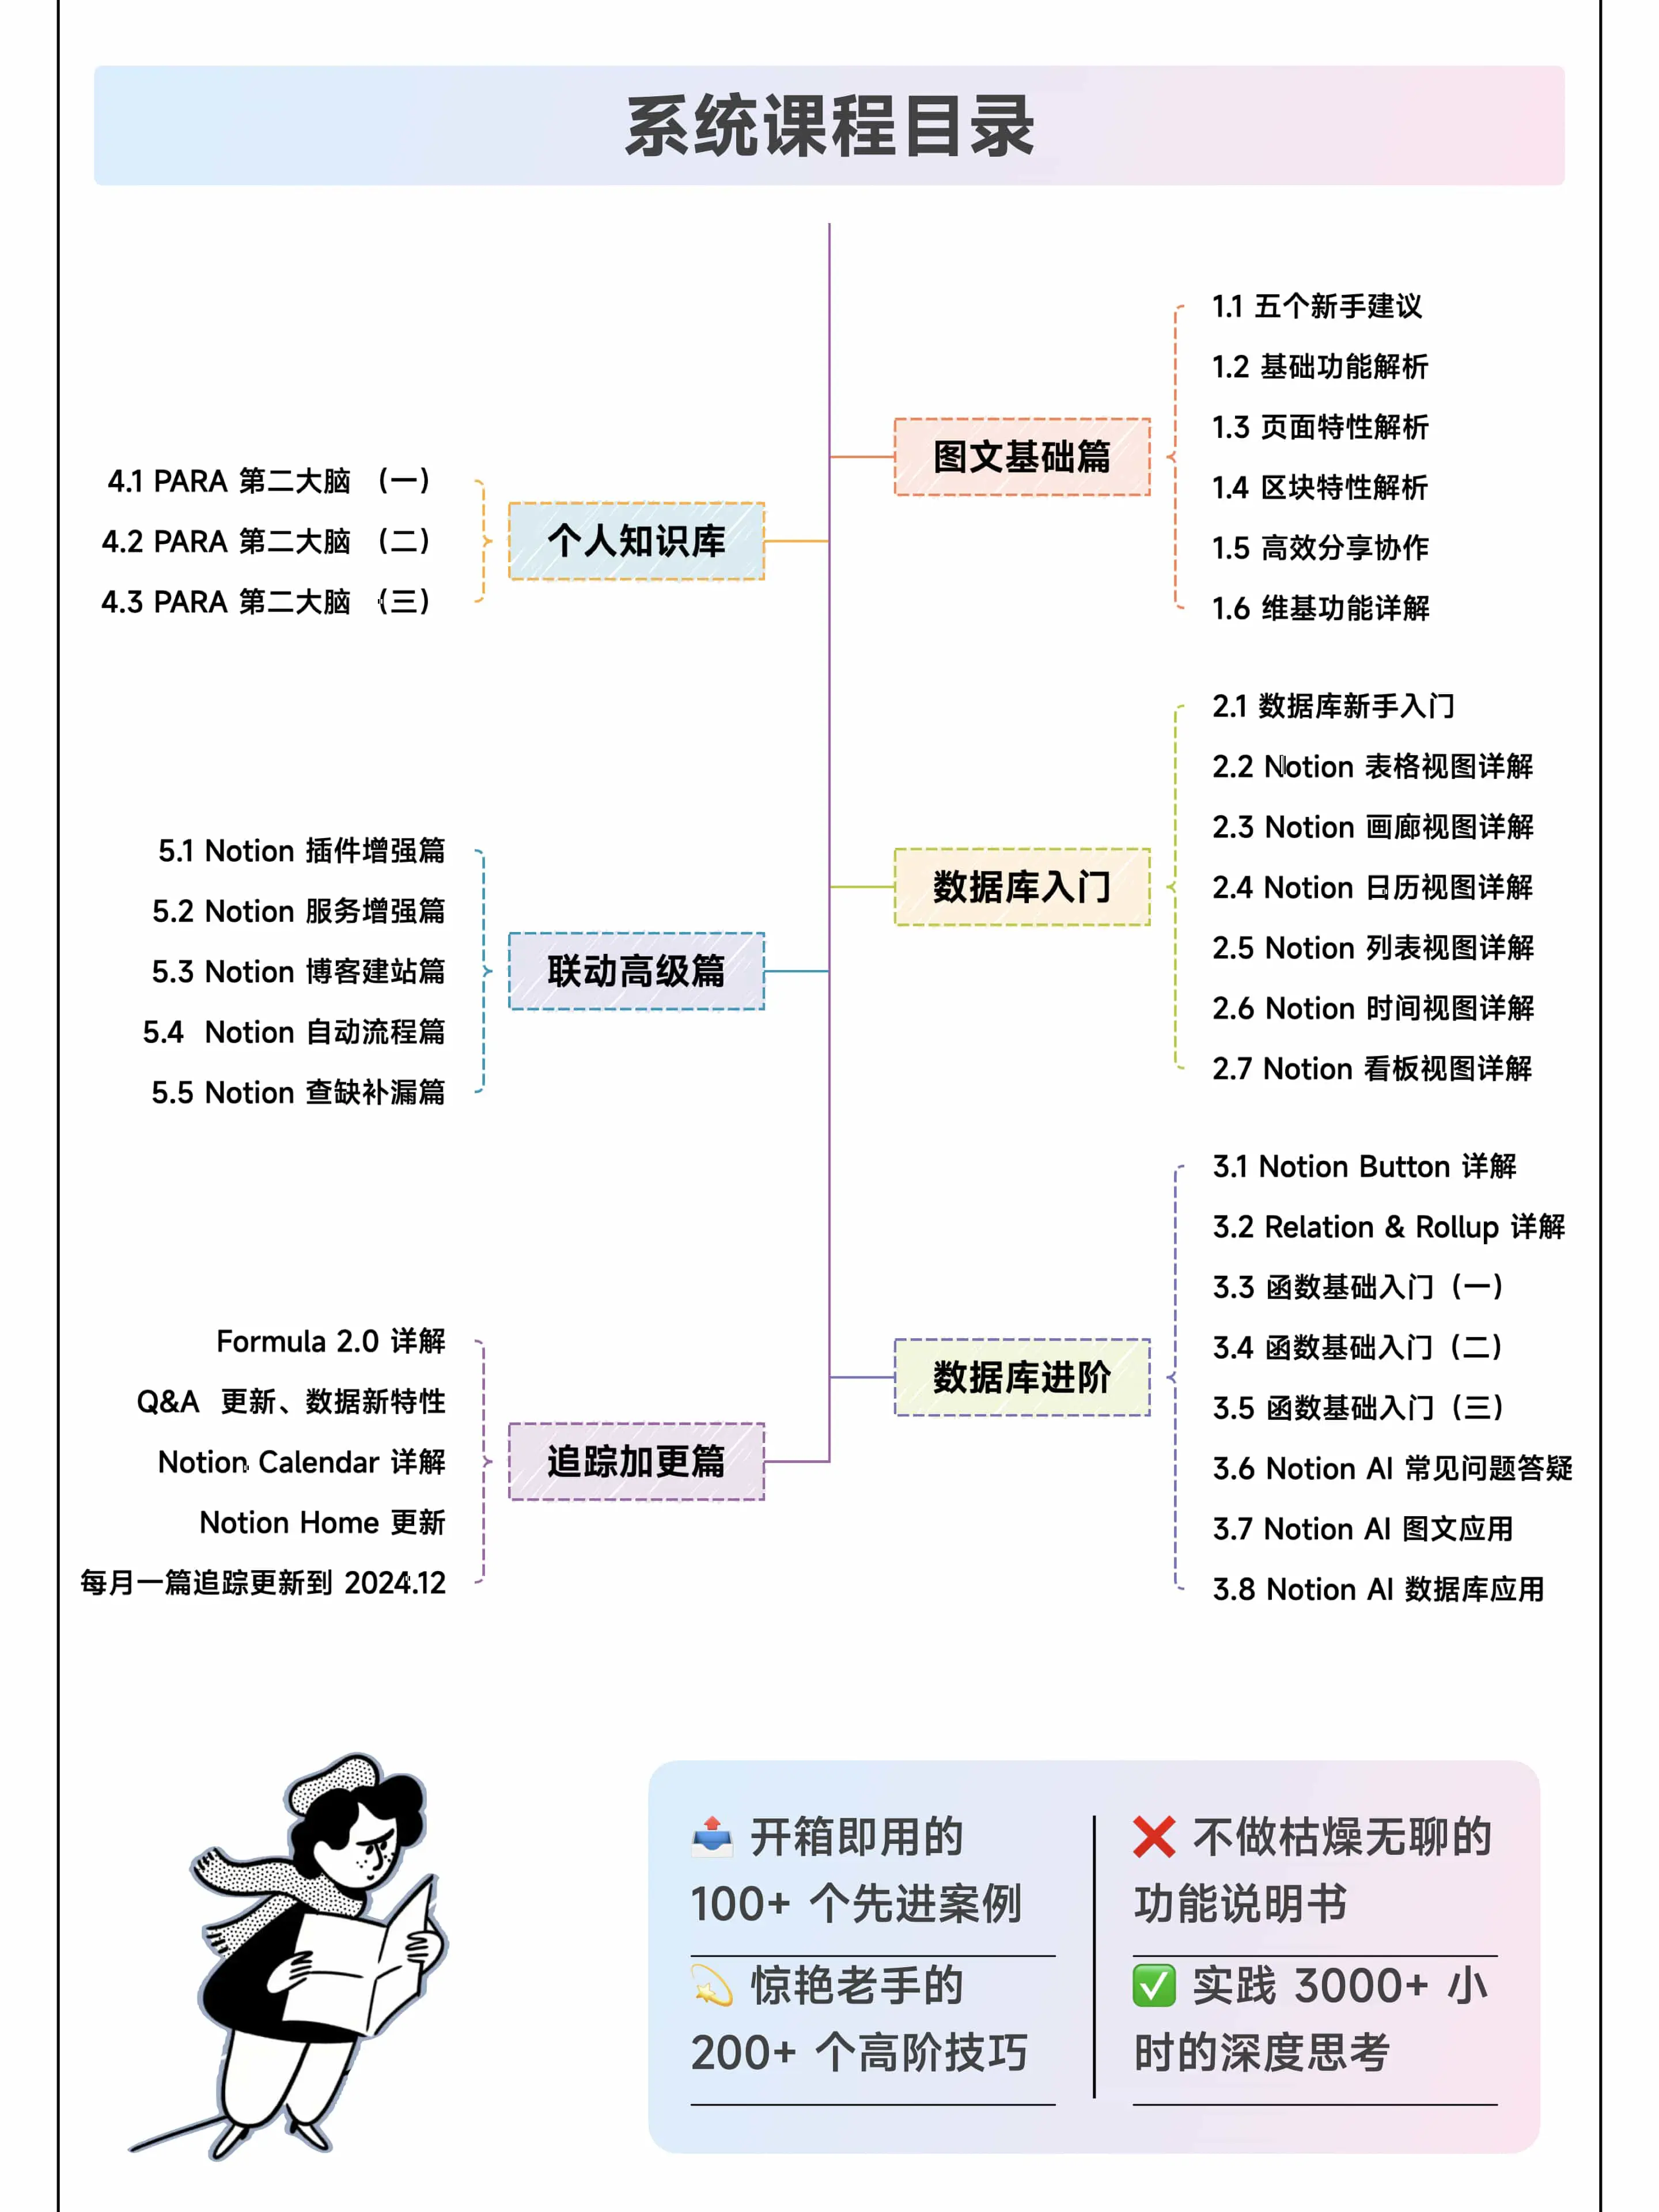 我的 Notion 中文系统课程｜2024 最新介绍插图4